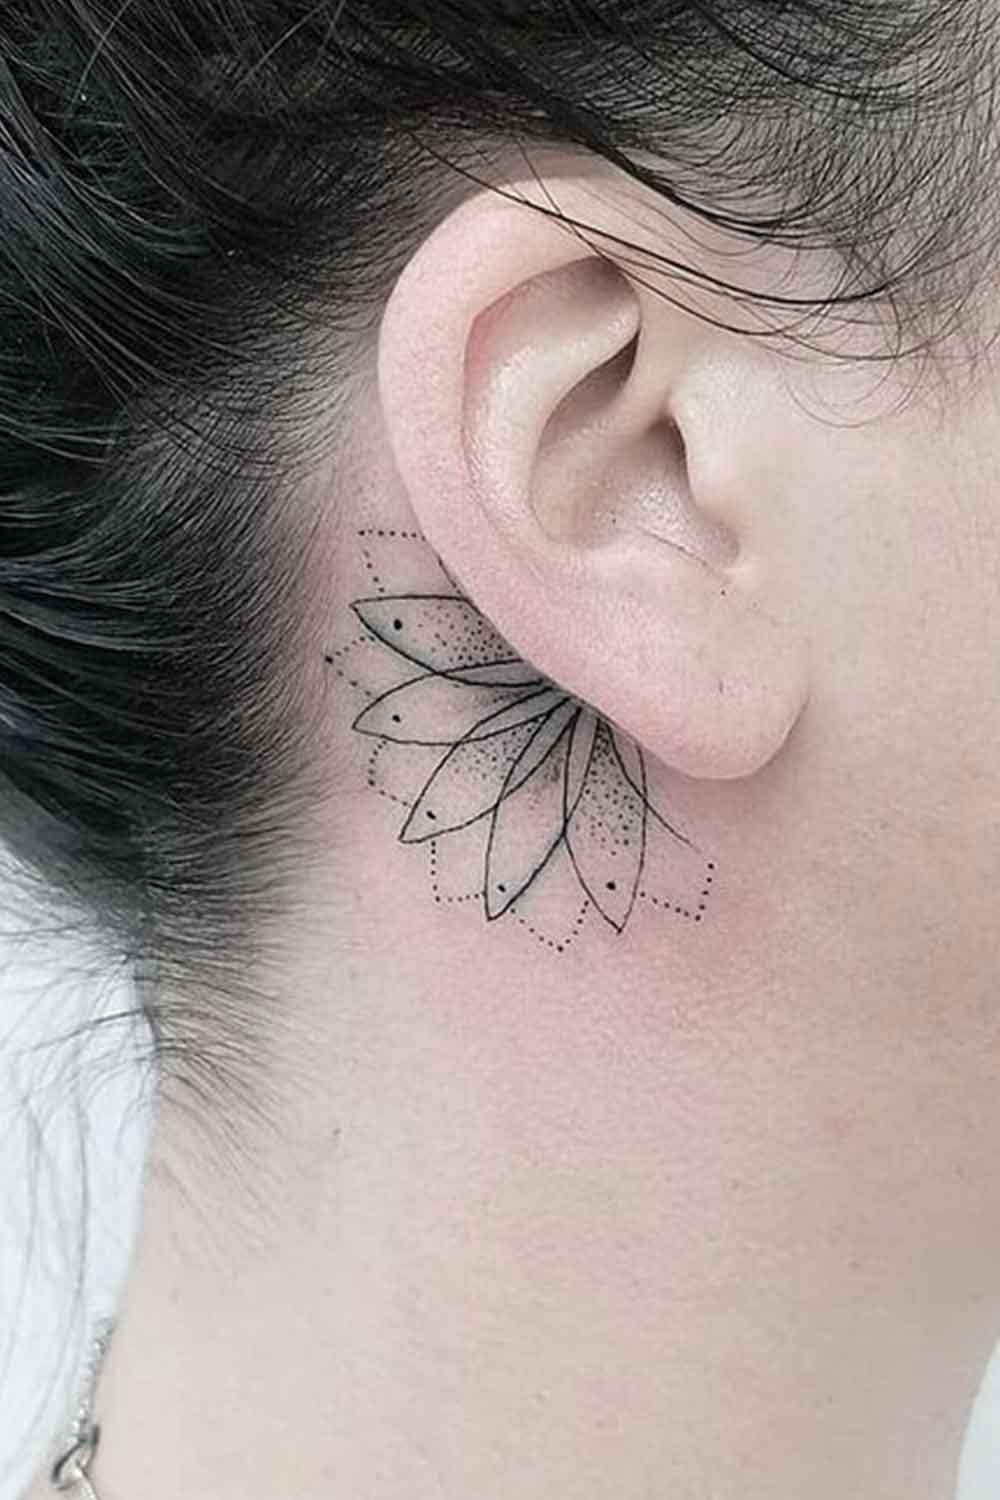 tatuaje femenino en oreja 04